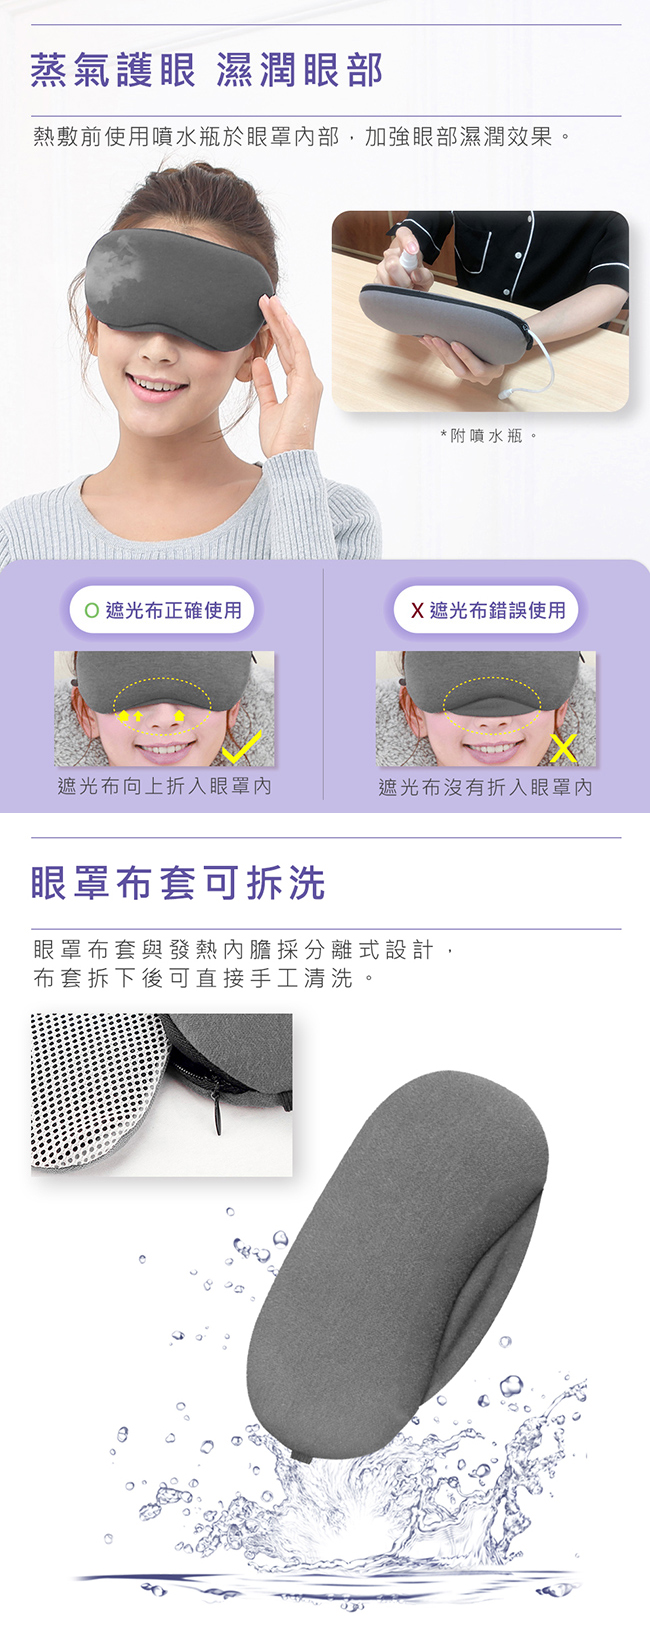 SAMPO聲寶 智能溫控3D熱能眼罩 HQ-Z21Y1L 眼罩 熱能 溫控 智能